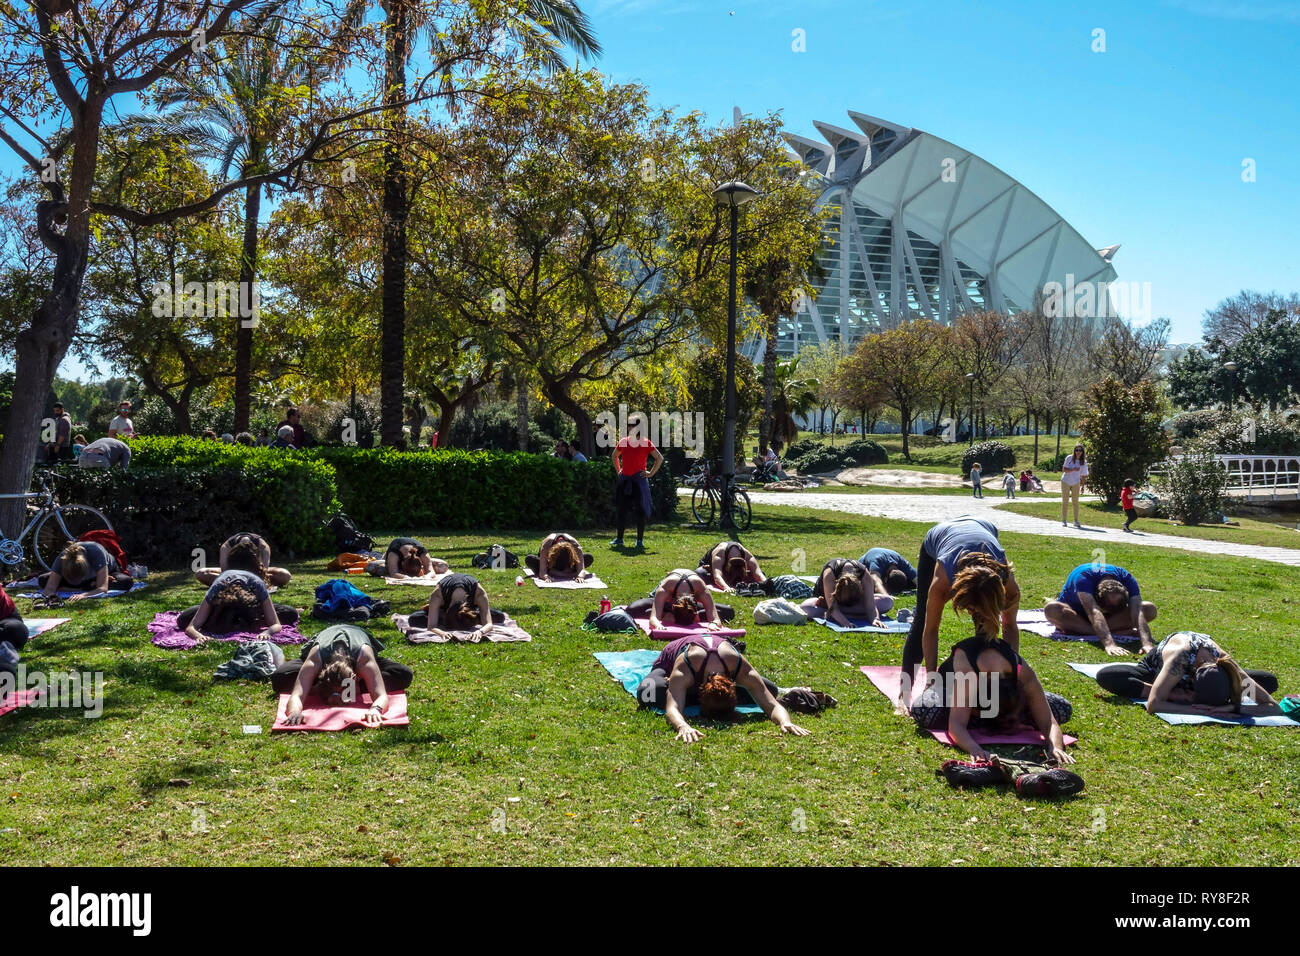 Valencia Turia Park, die Menschen treffen sich im Park und üben Yoga Spanien Yoga Klasse Gruppe im Garten Valencia Science Park Stockfoto